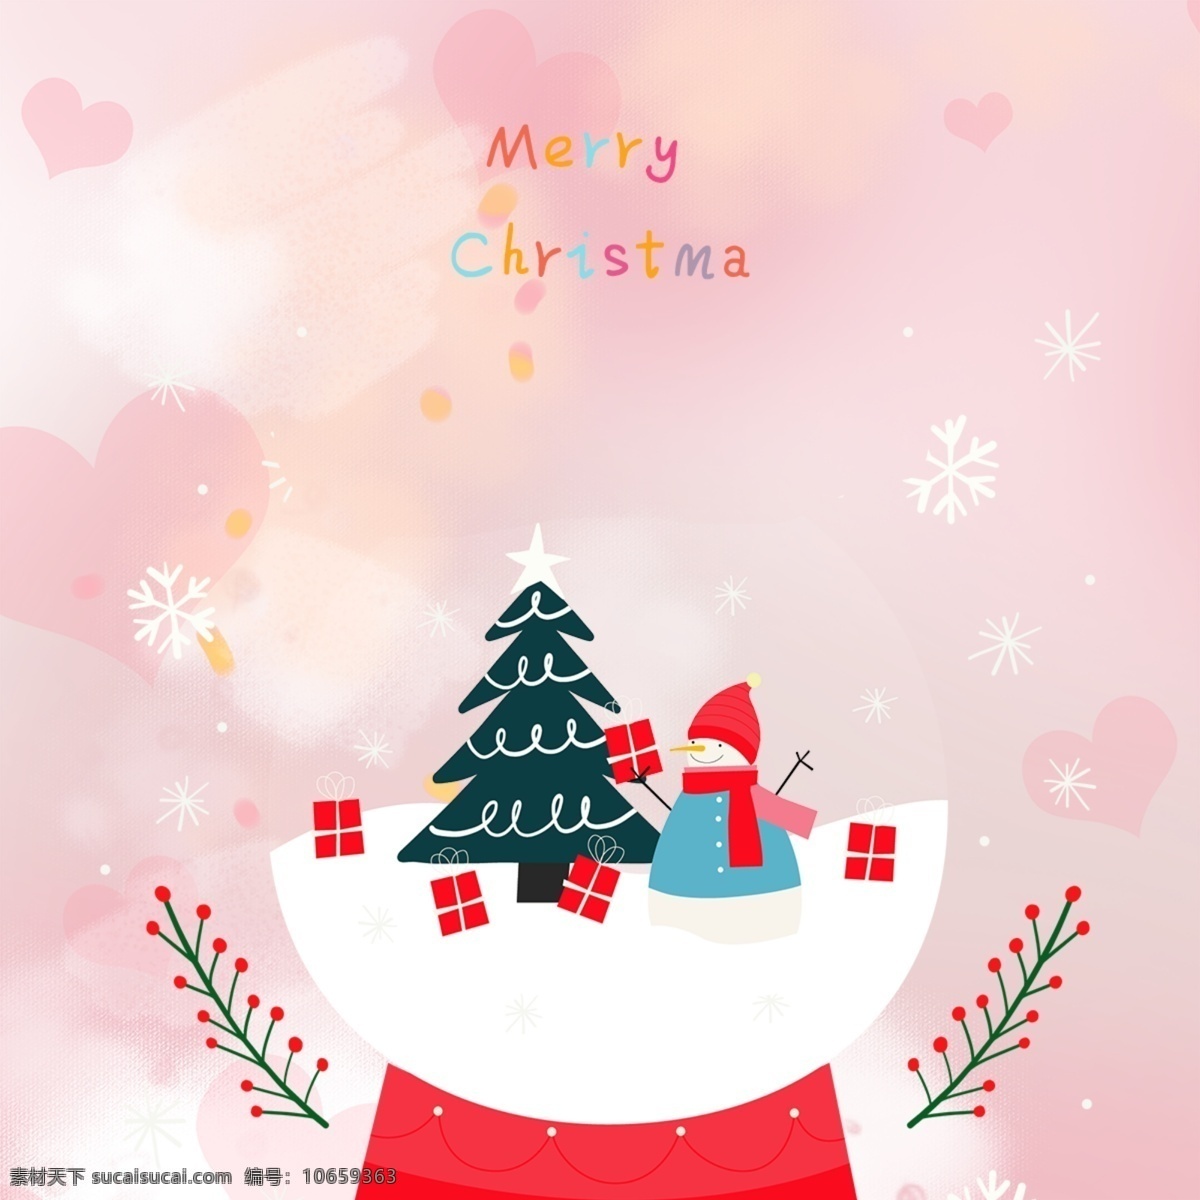 可爱 粉色 背景 爱 雪花 圣诞 雪人 音乐盒 圣诞树 圣诞节 新年 海洋